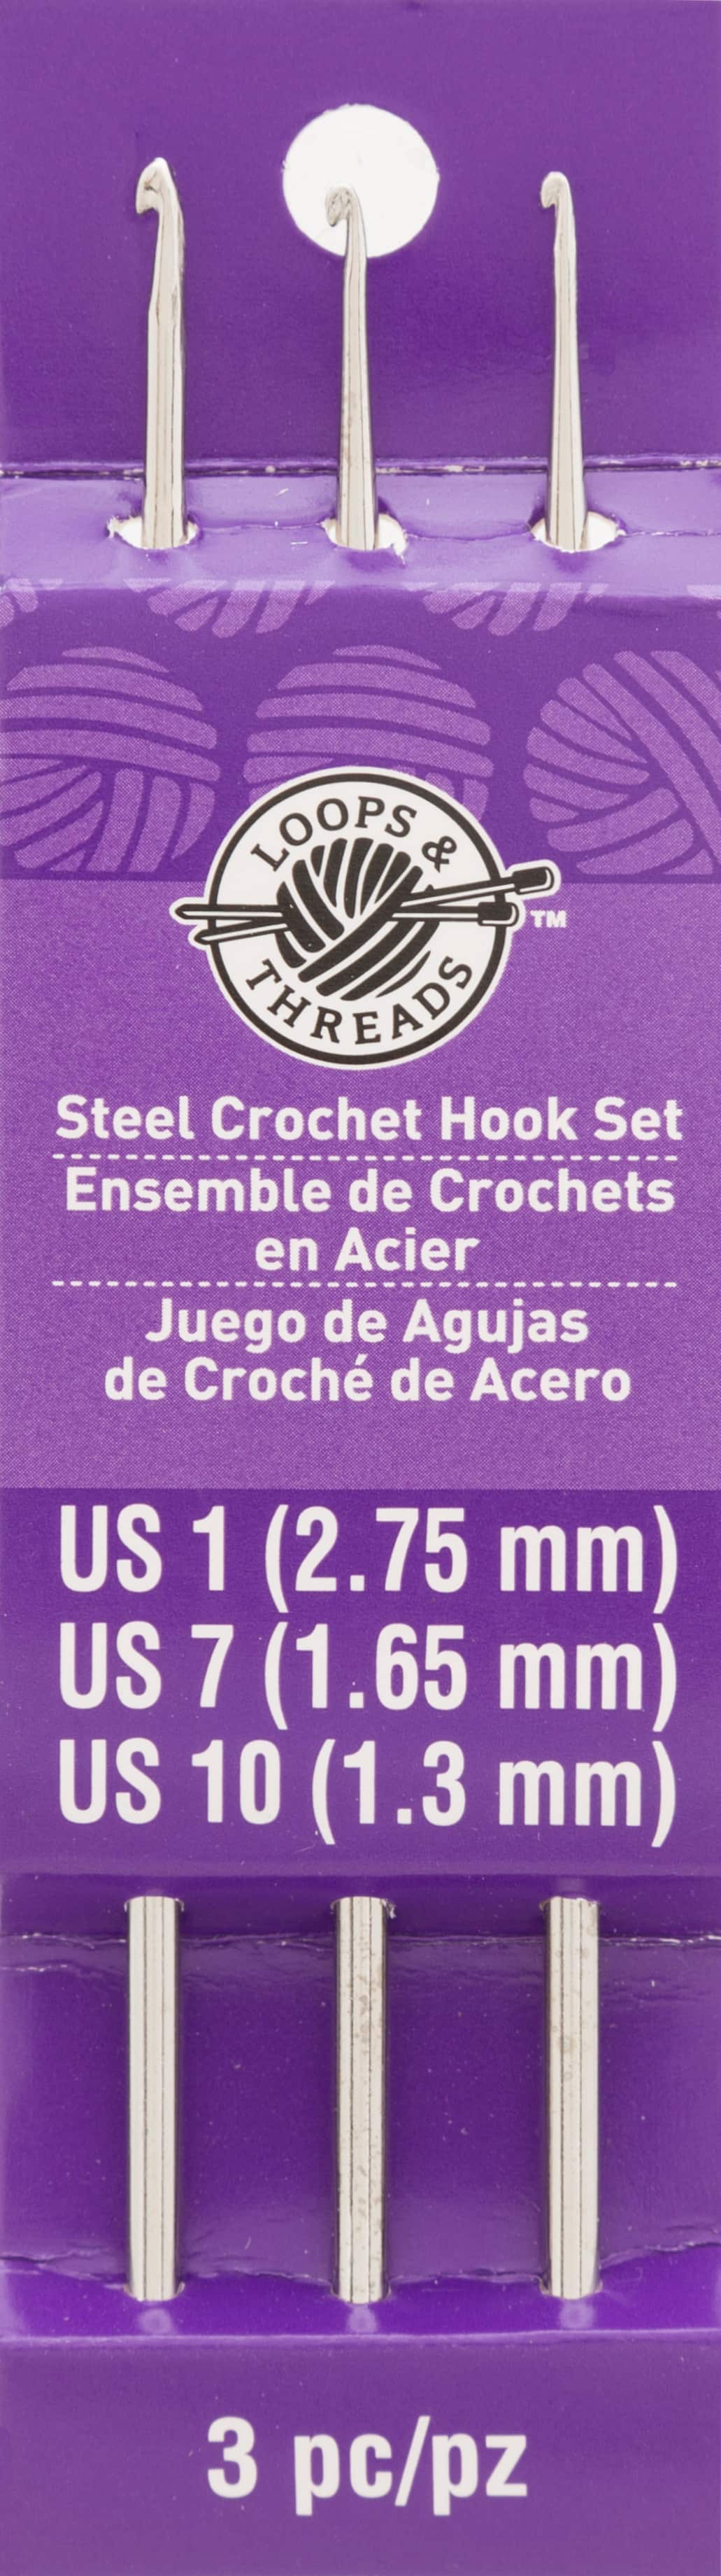 Steel Crochet Hook Set by Loops &#x26; Threads&#xAE;, 1/7/10